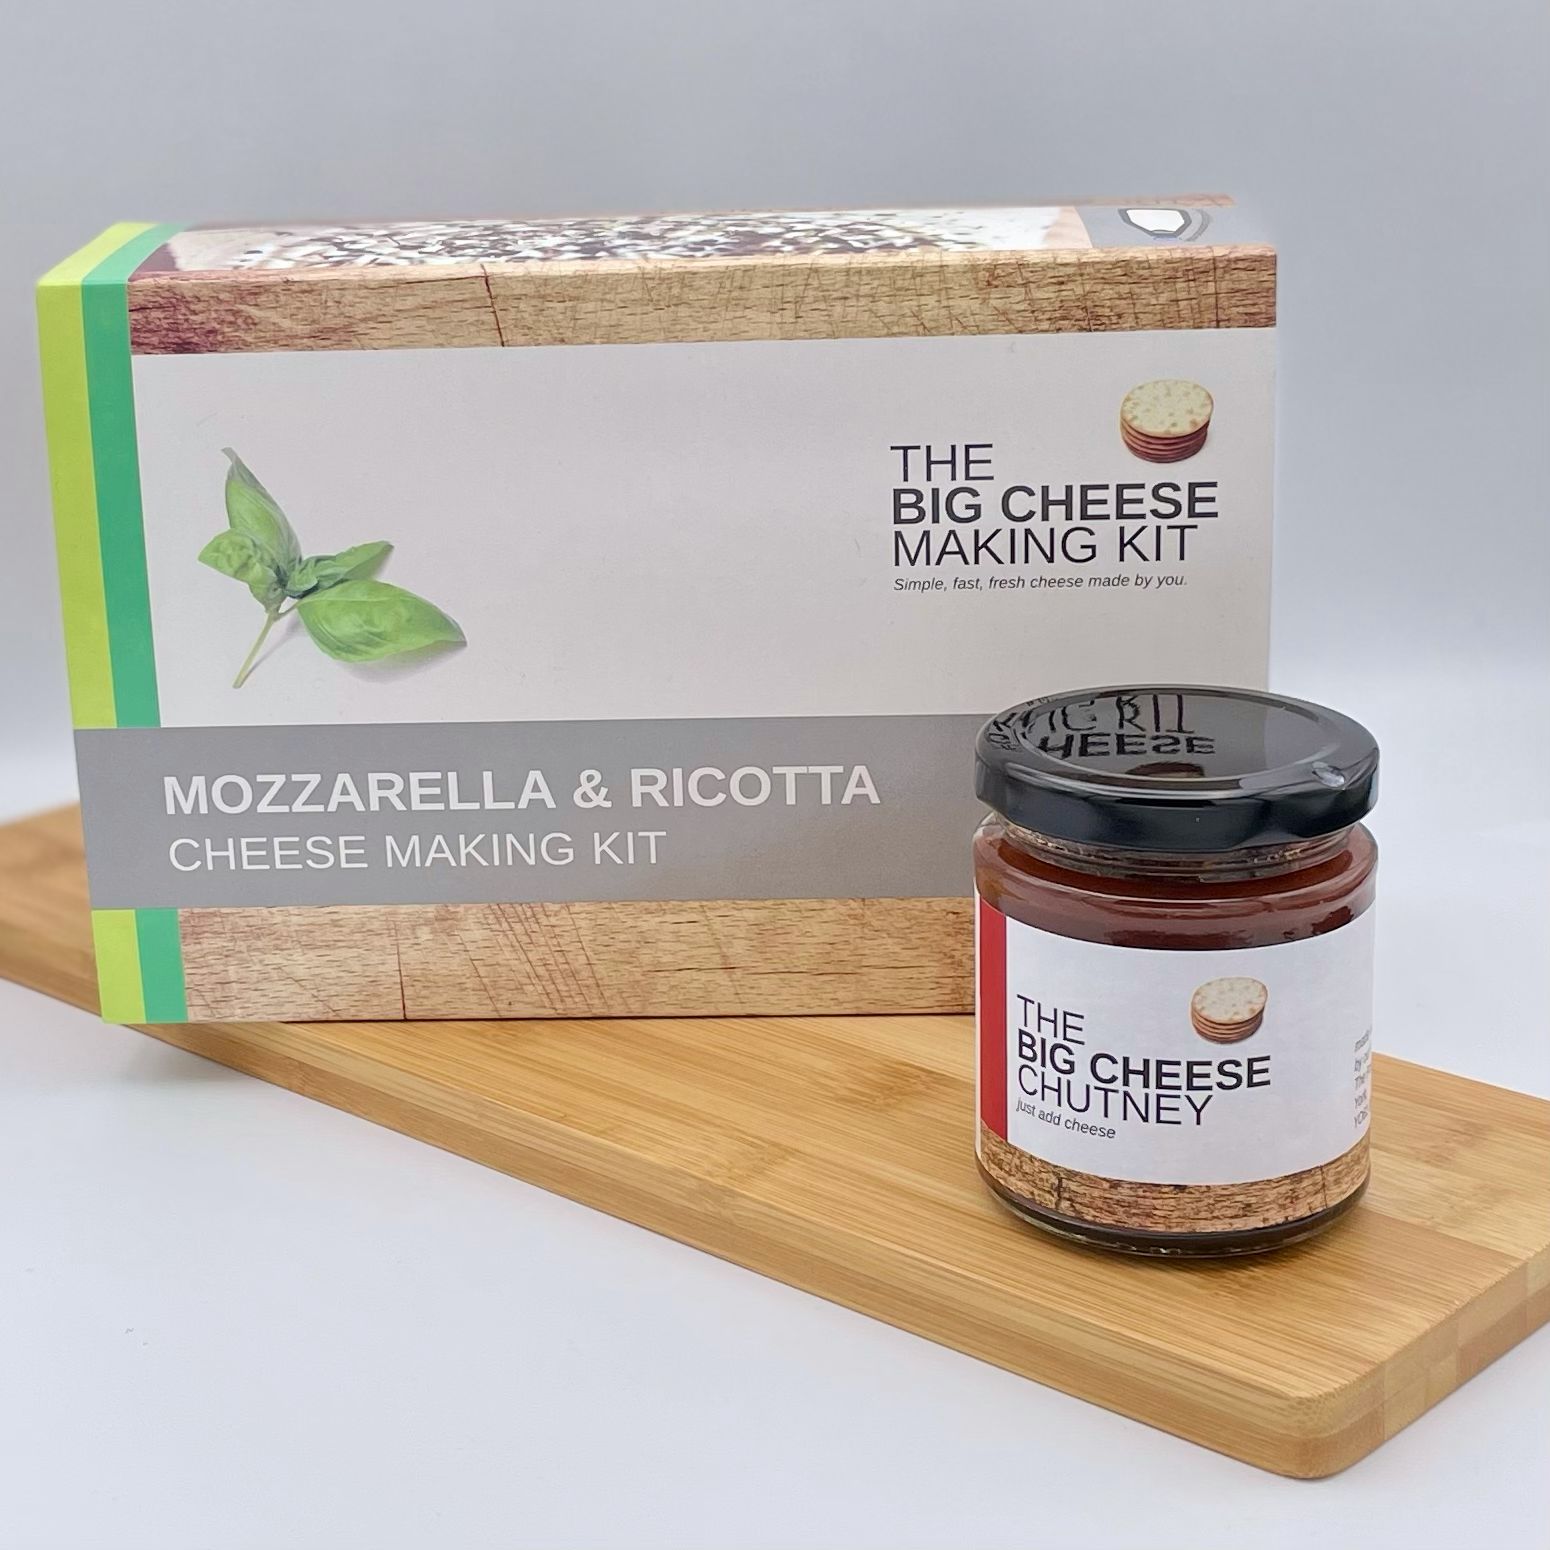 The Big Mozzarella & Ricotta Gift Set